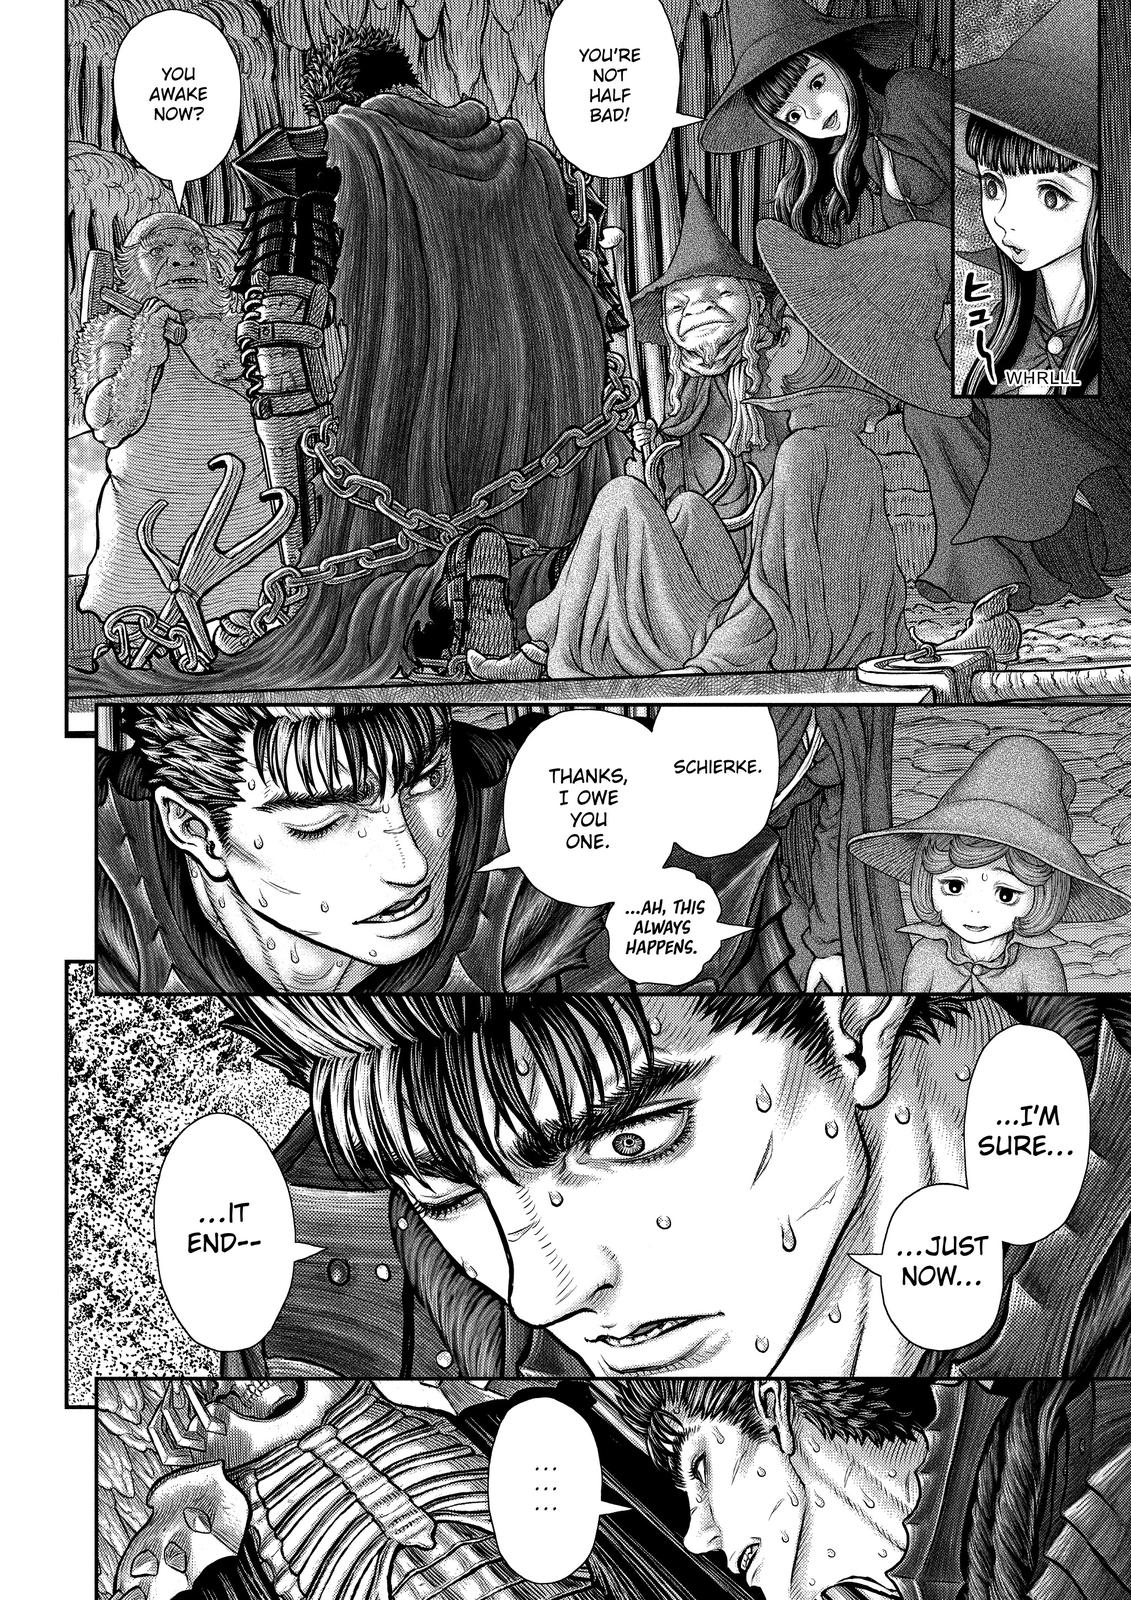 Berserk Manga Chapter 362 image 13